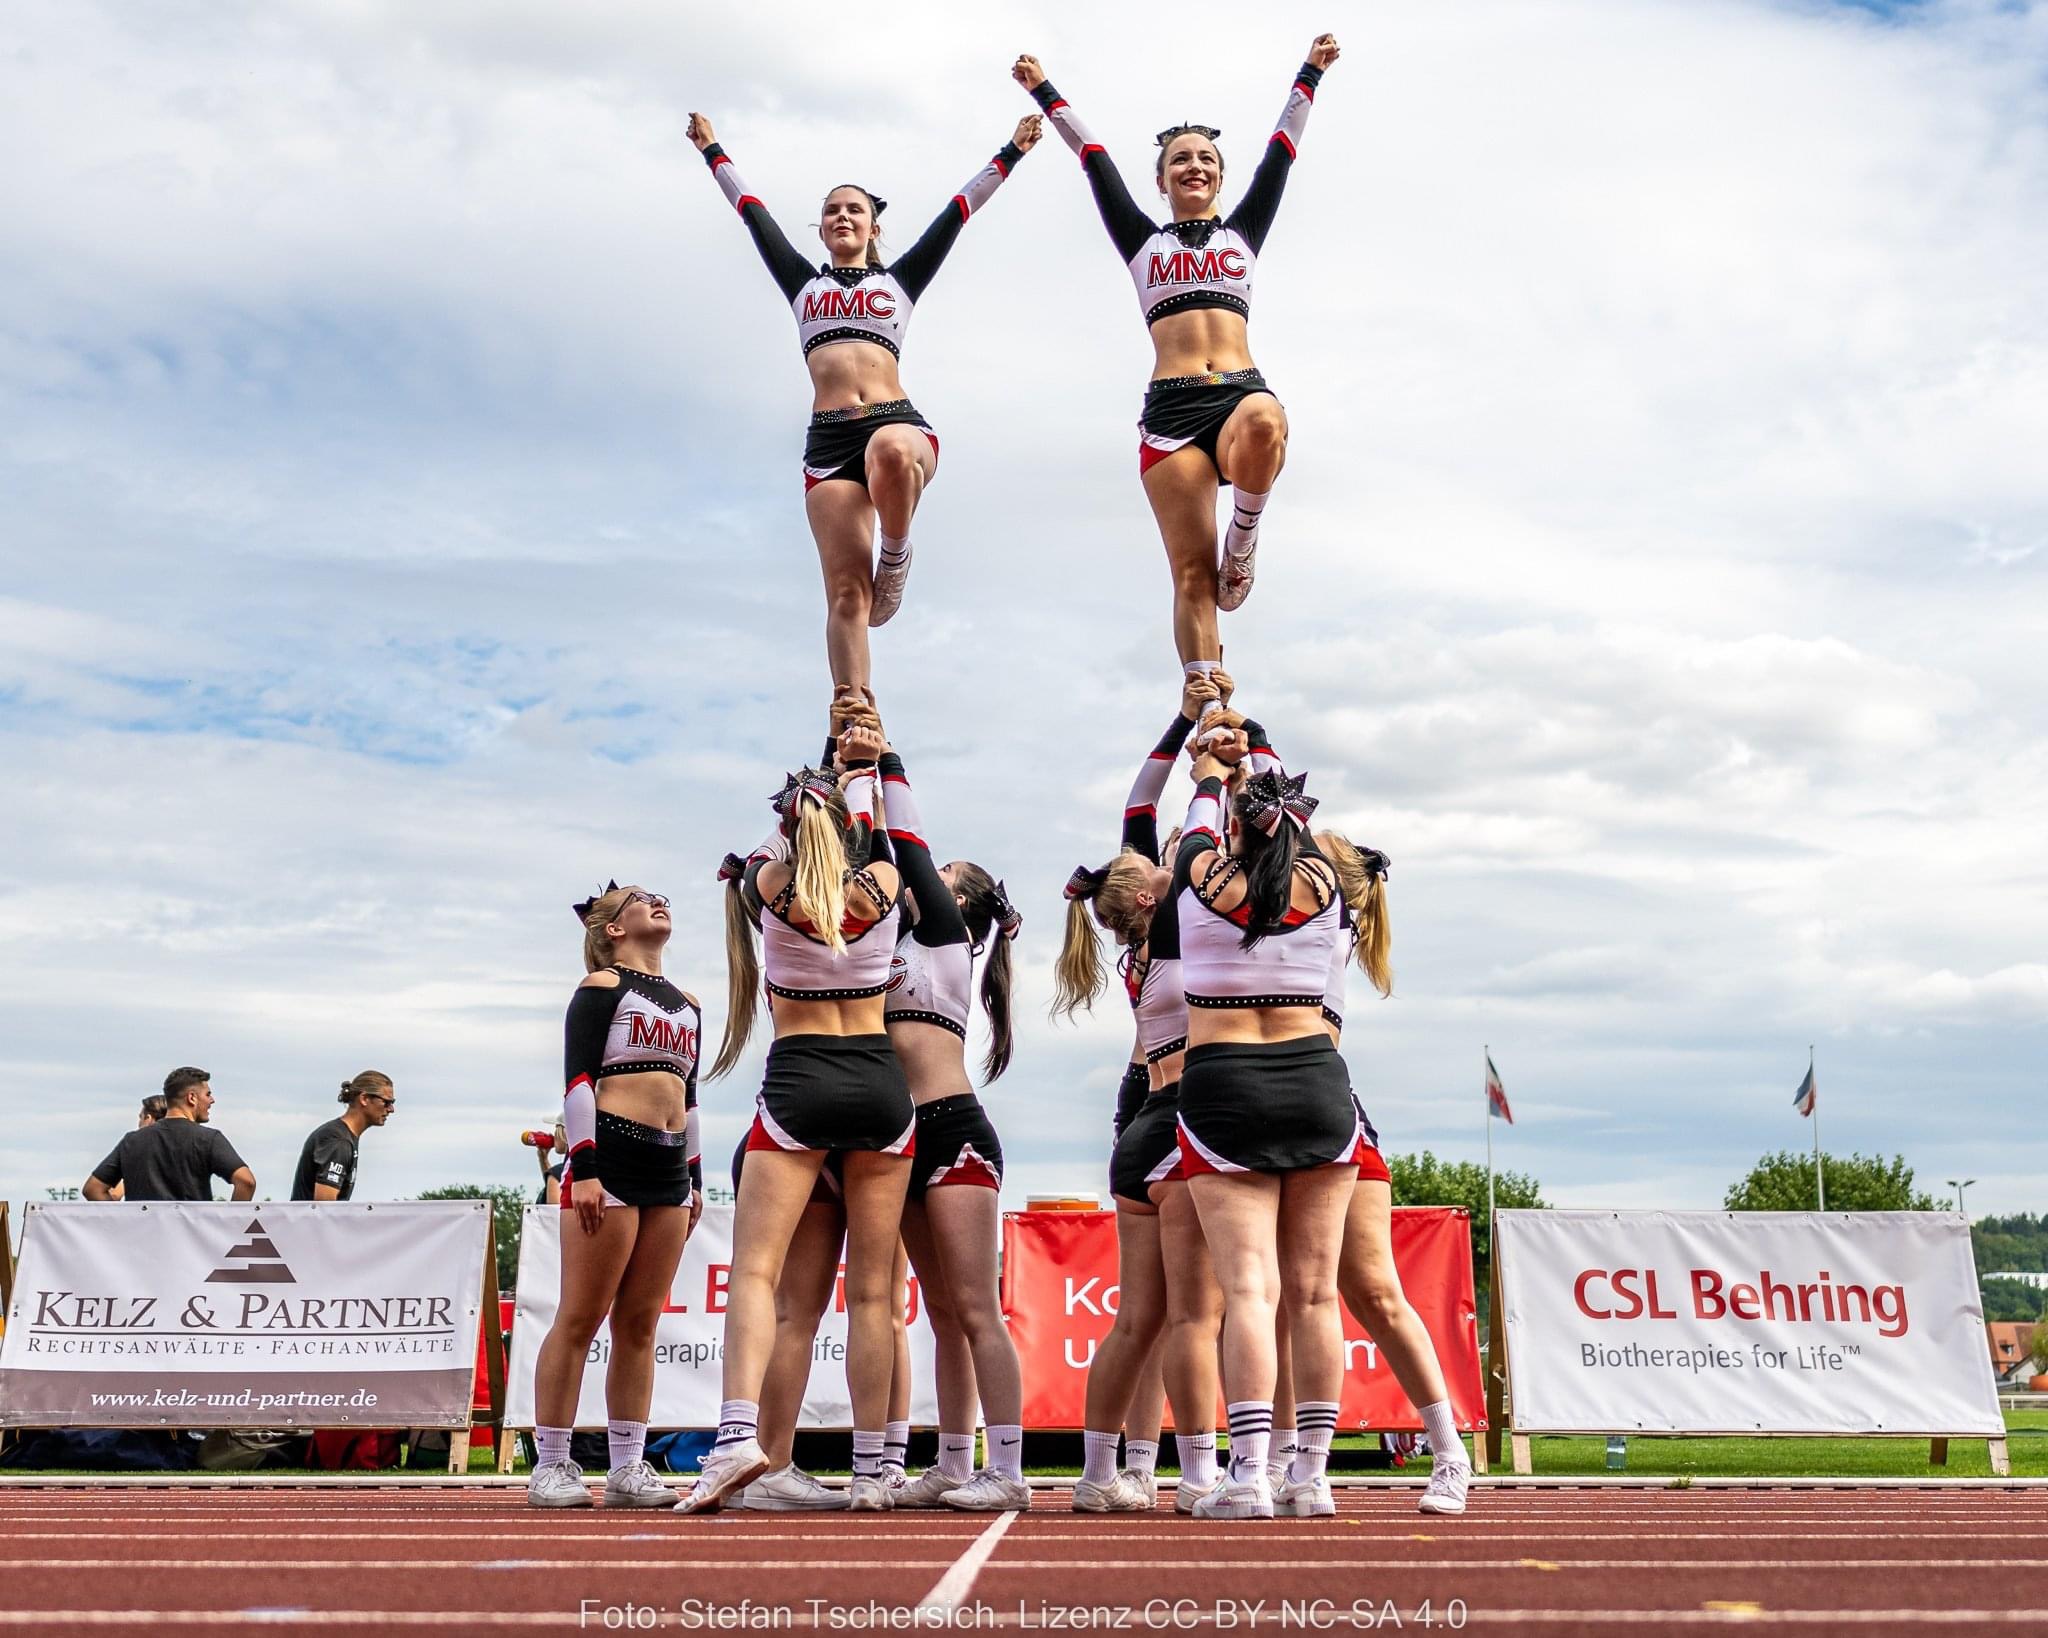 Gruppenfoto der Cheerleader von Stefan Tschersich